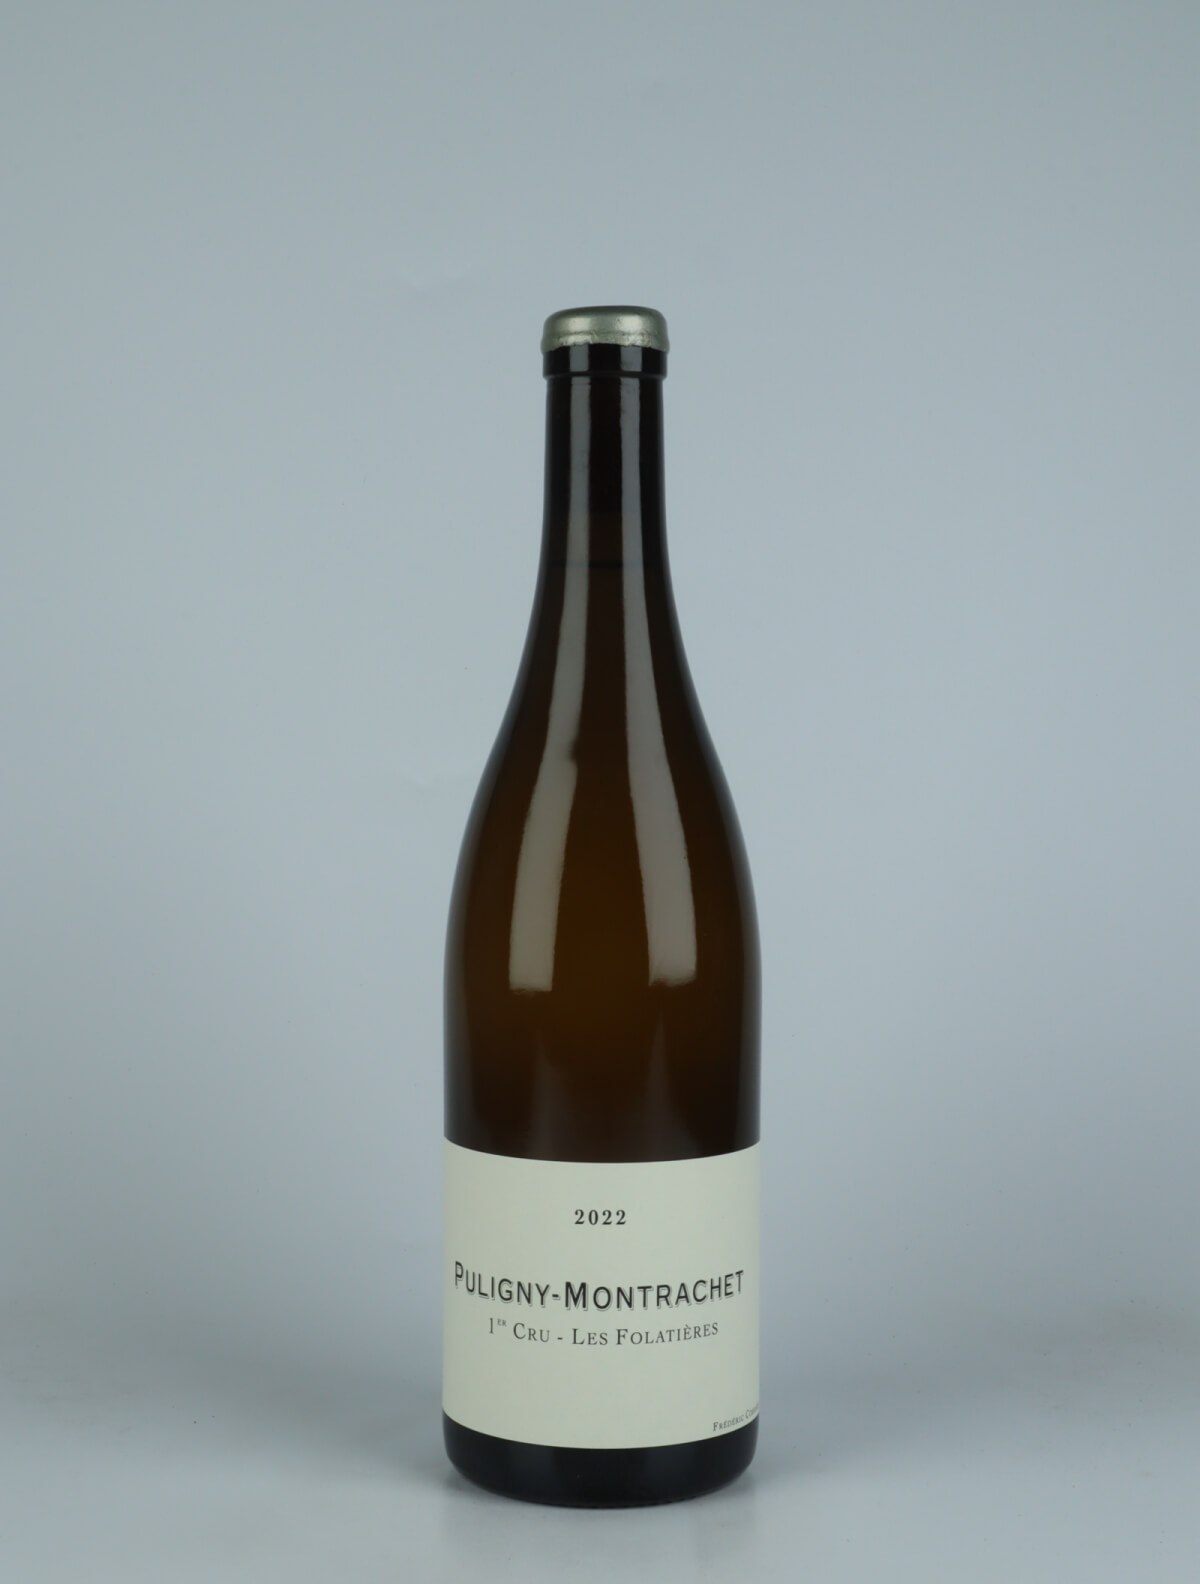 En flaske 2022 Puligny Montrachet 1. Cru - Folatières Hvidvin fra Frédéric Cossard, Bourgogne i Frankrig